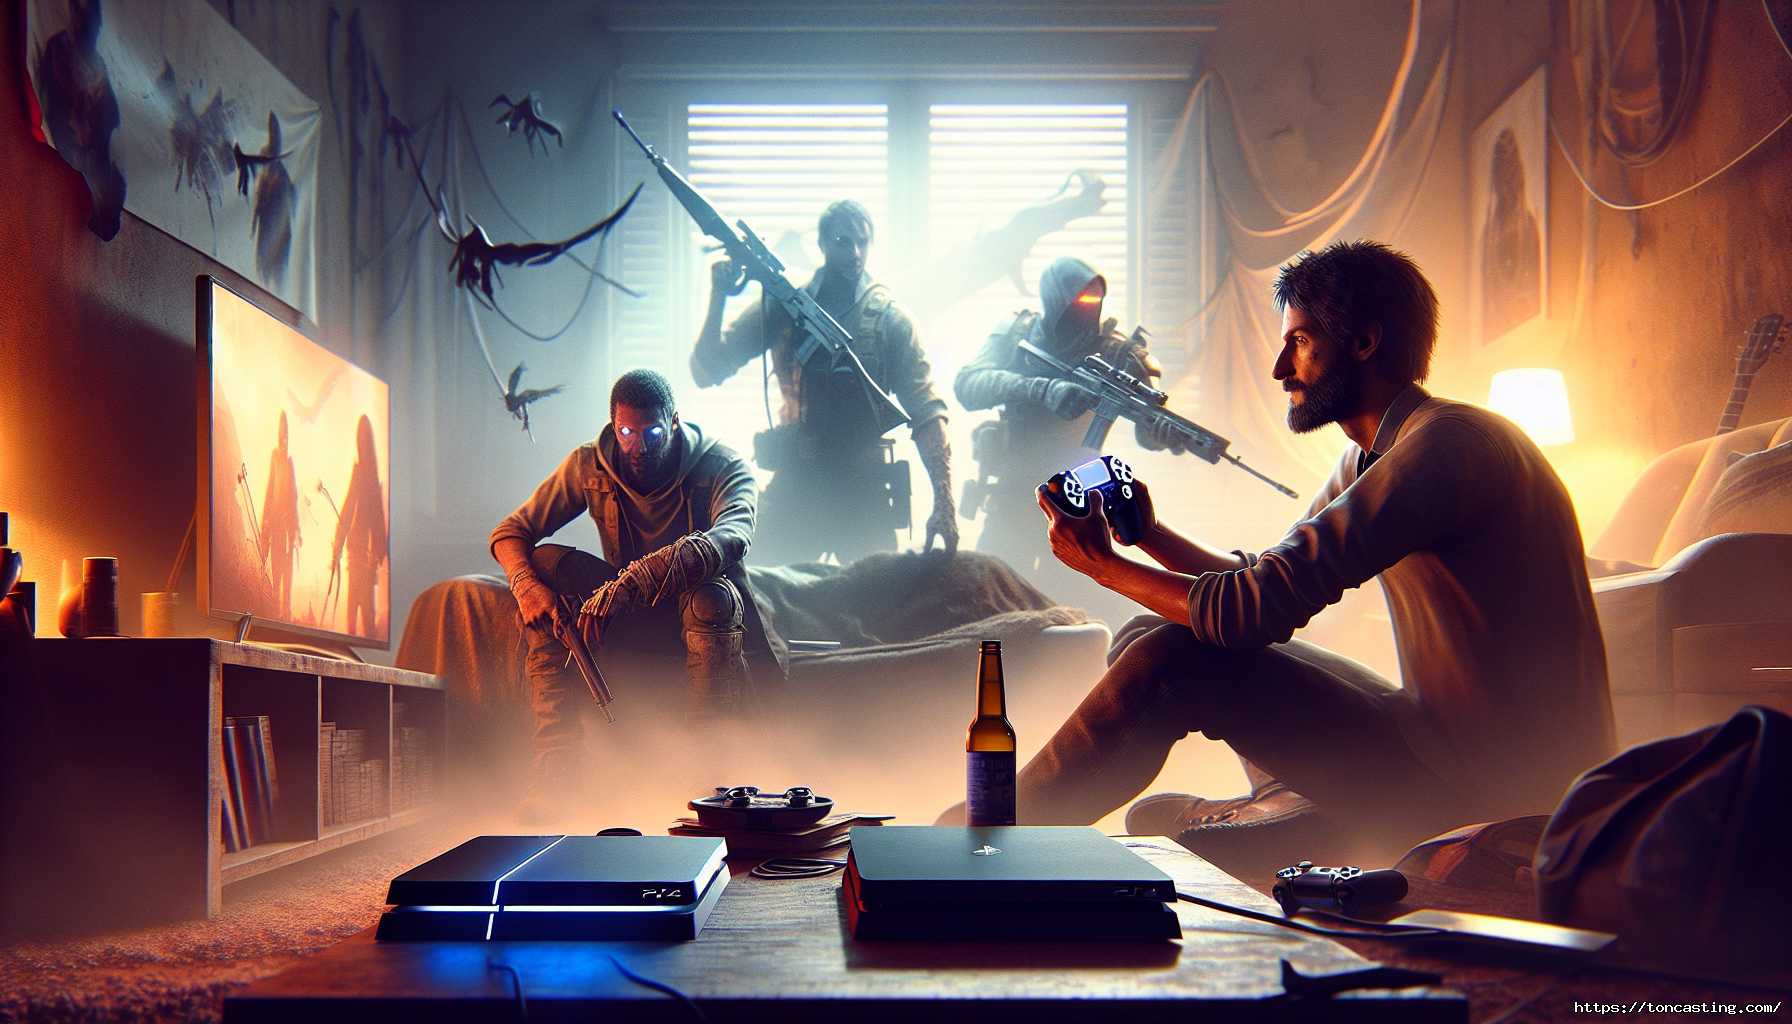 Un homme joue à un jeu vidéo dans un salon sombre, avec des guerriers en arrière-plan.